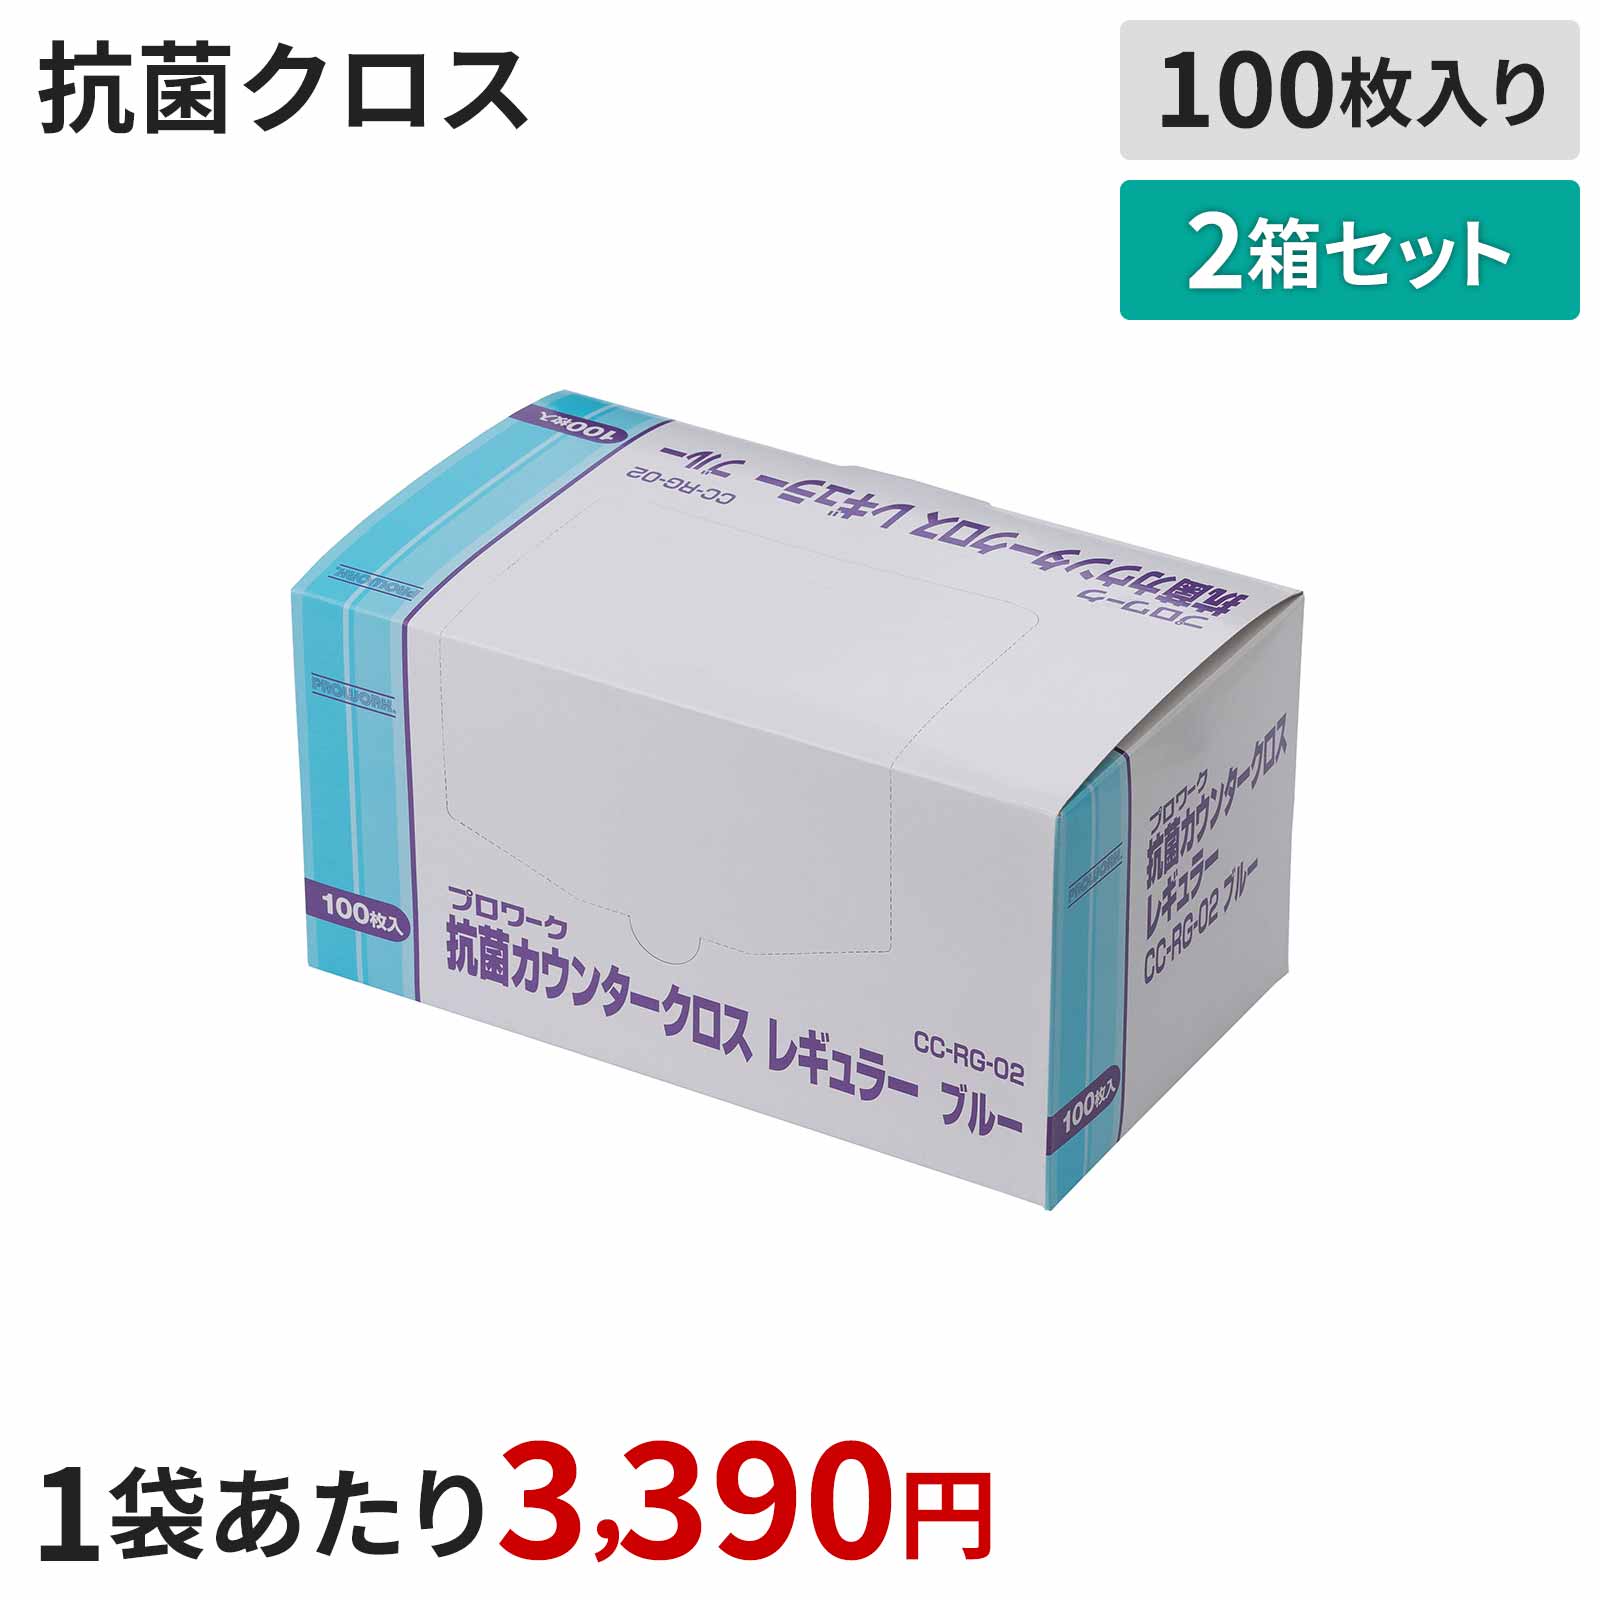 高級品市場 抗菌カウンタークロス ブルー 100枚